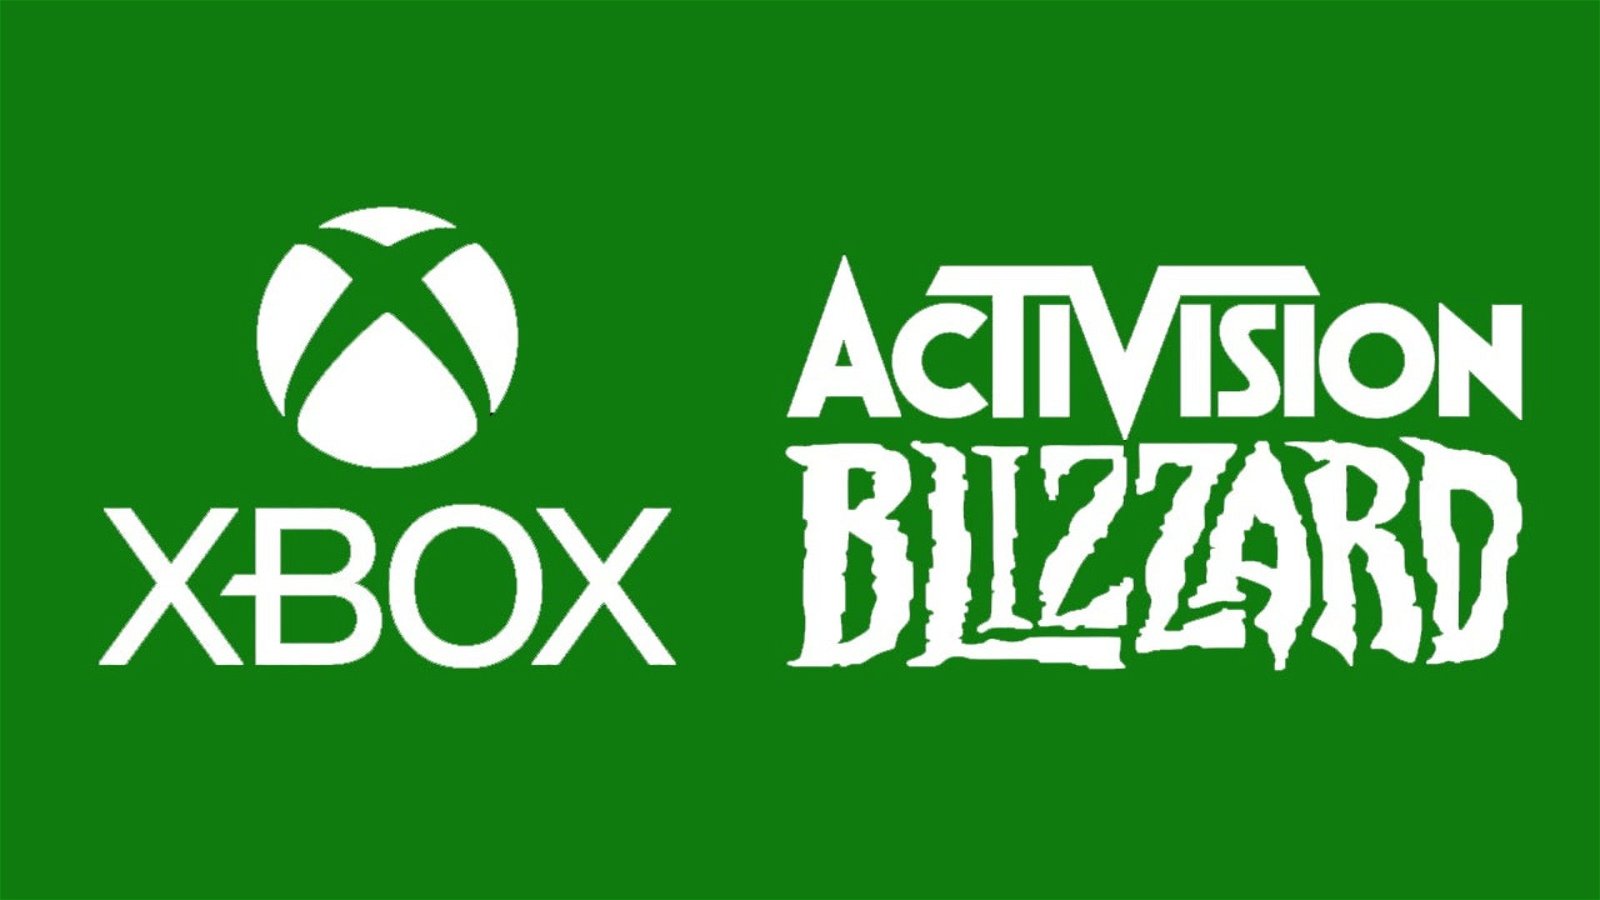 Xbox Activision, ci siamo quasi: via libera provvisorio dalla CMA!